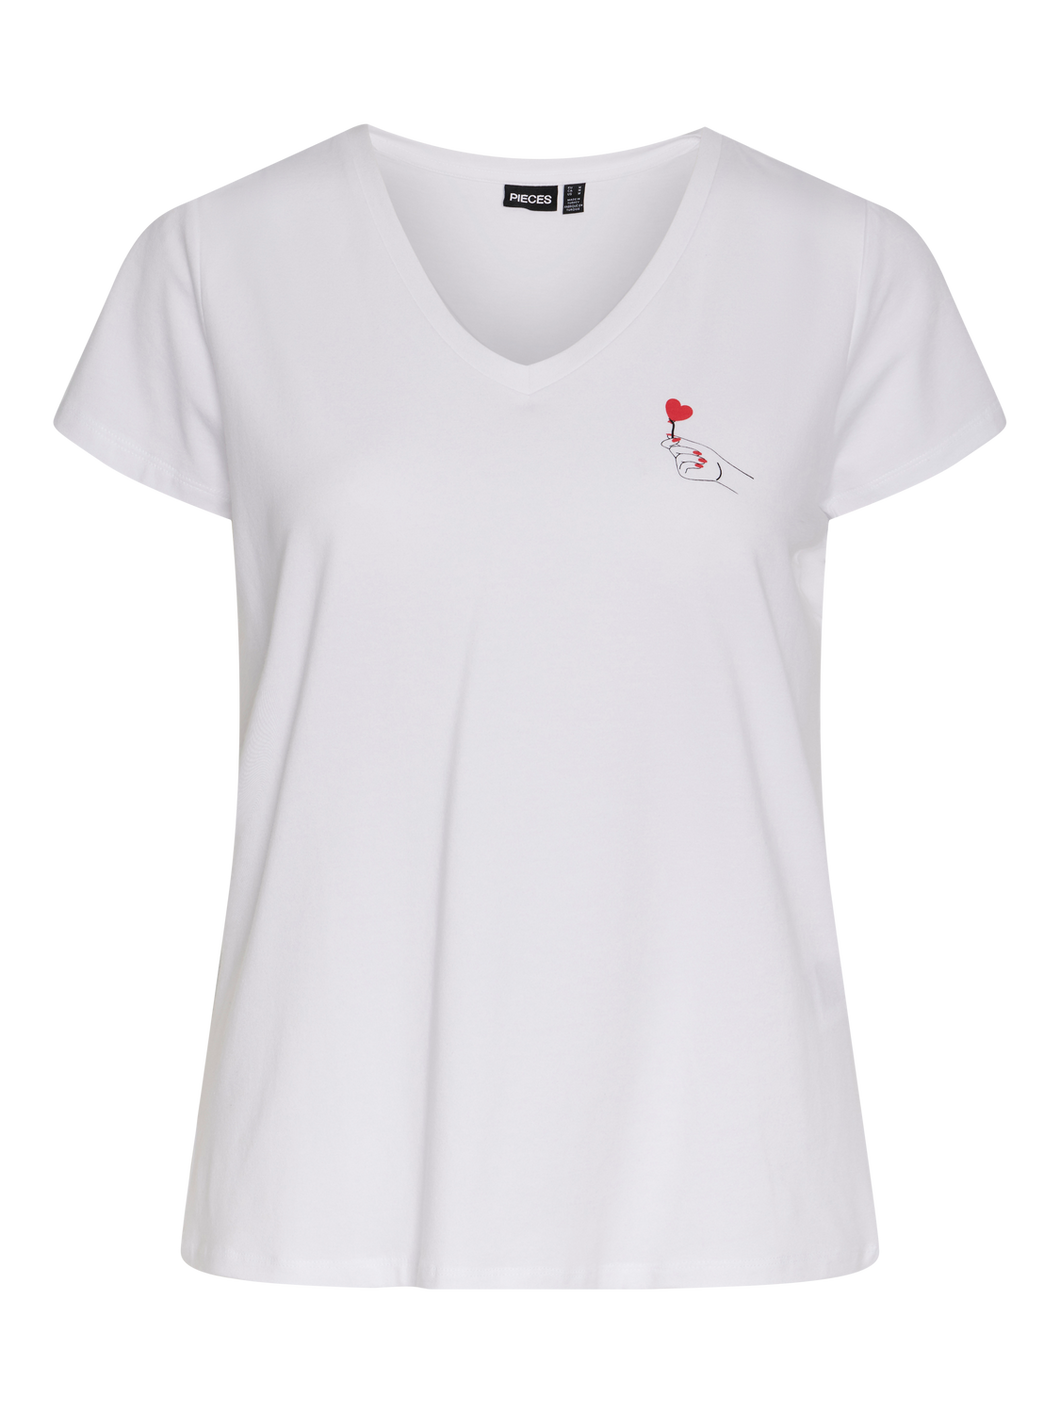 PCMANU T-Shirt - Bright White